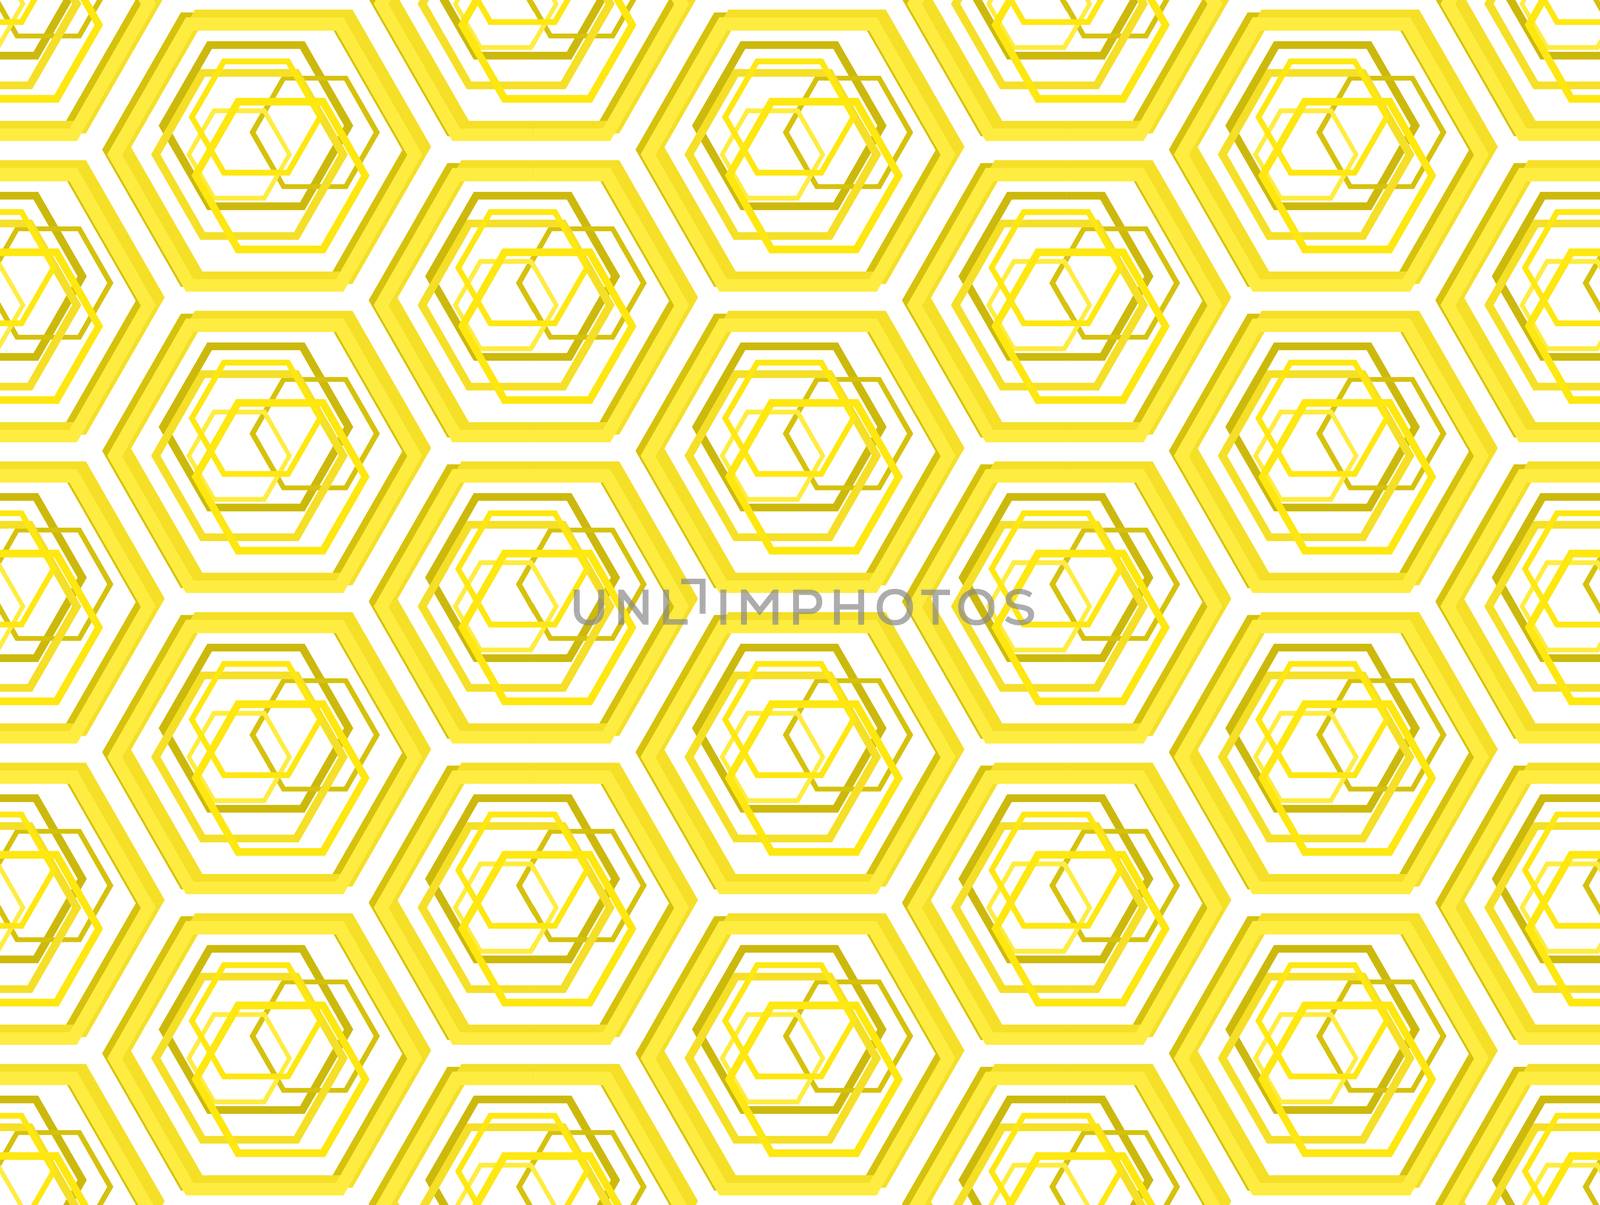 Be honeycombs stylized geometric seamless pattern background